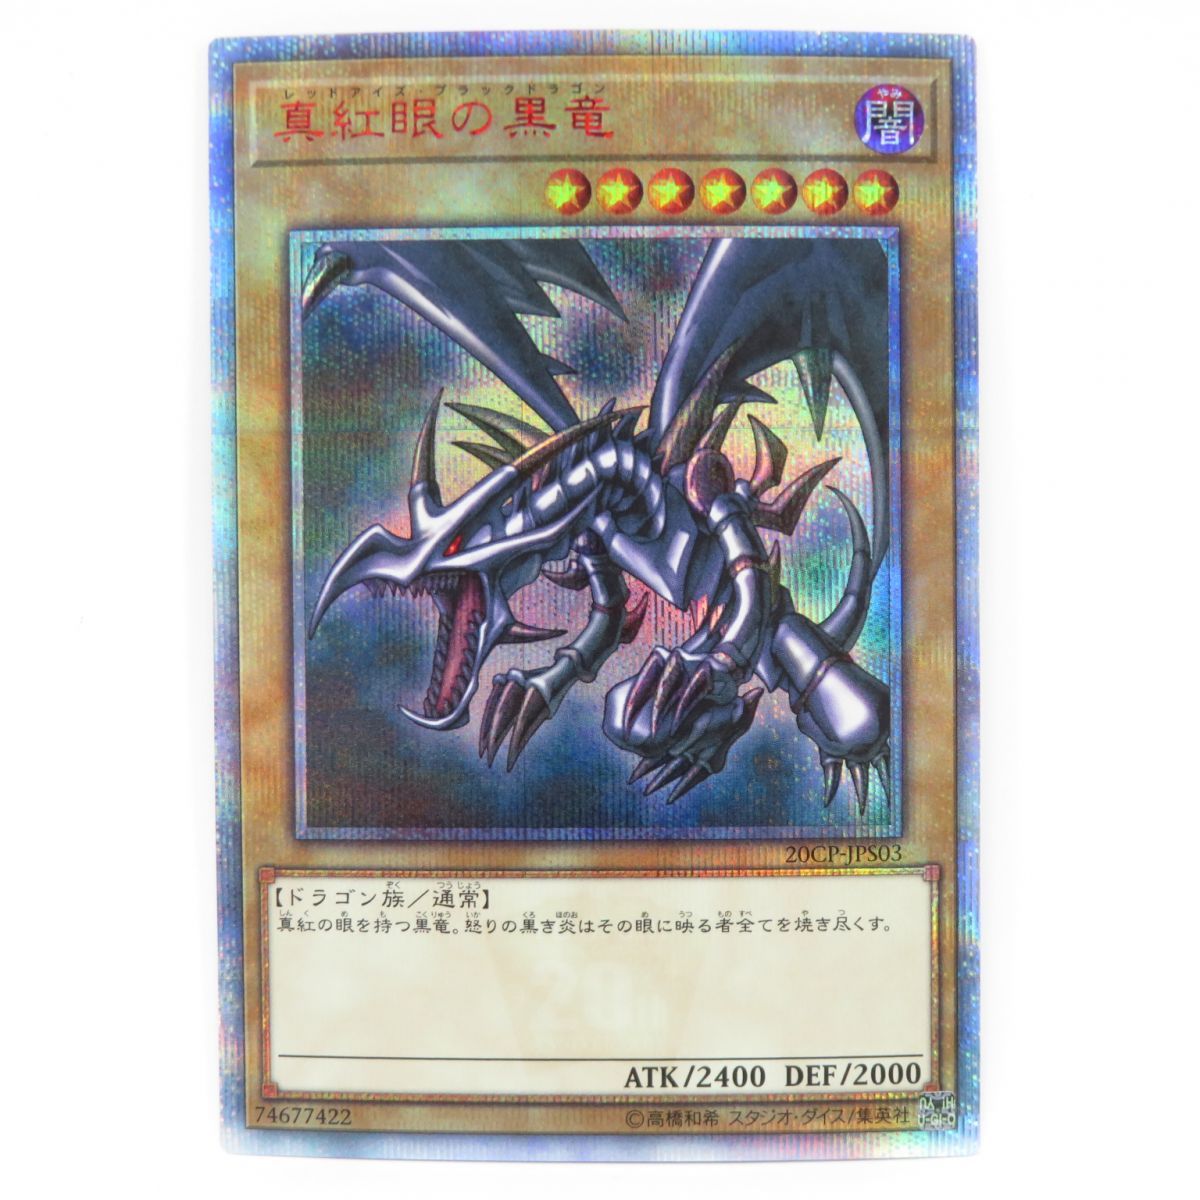 カード真紅眼の黒竜 20th 20CP-JPS03 - カード